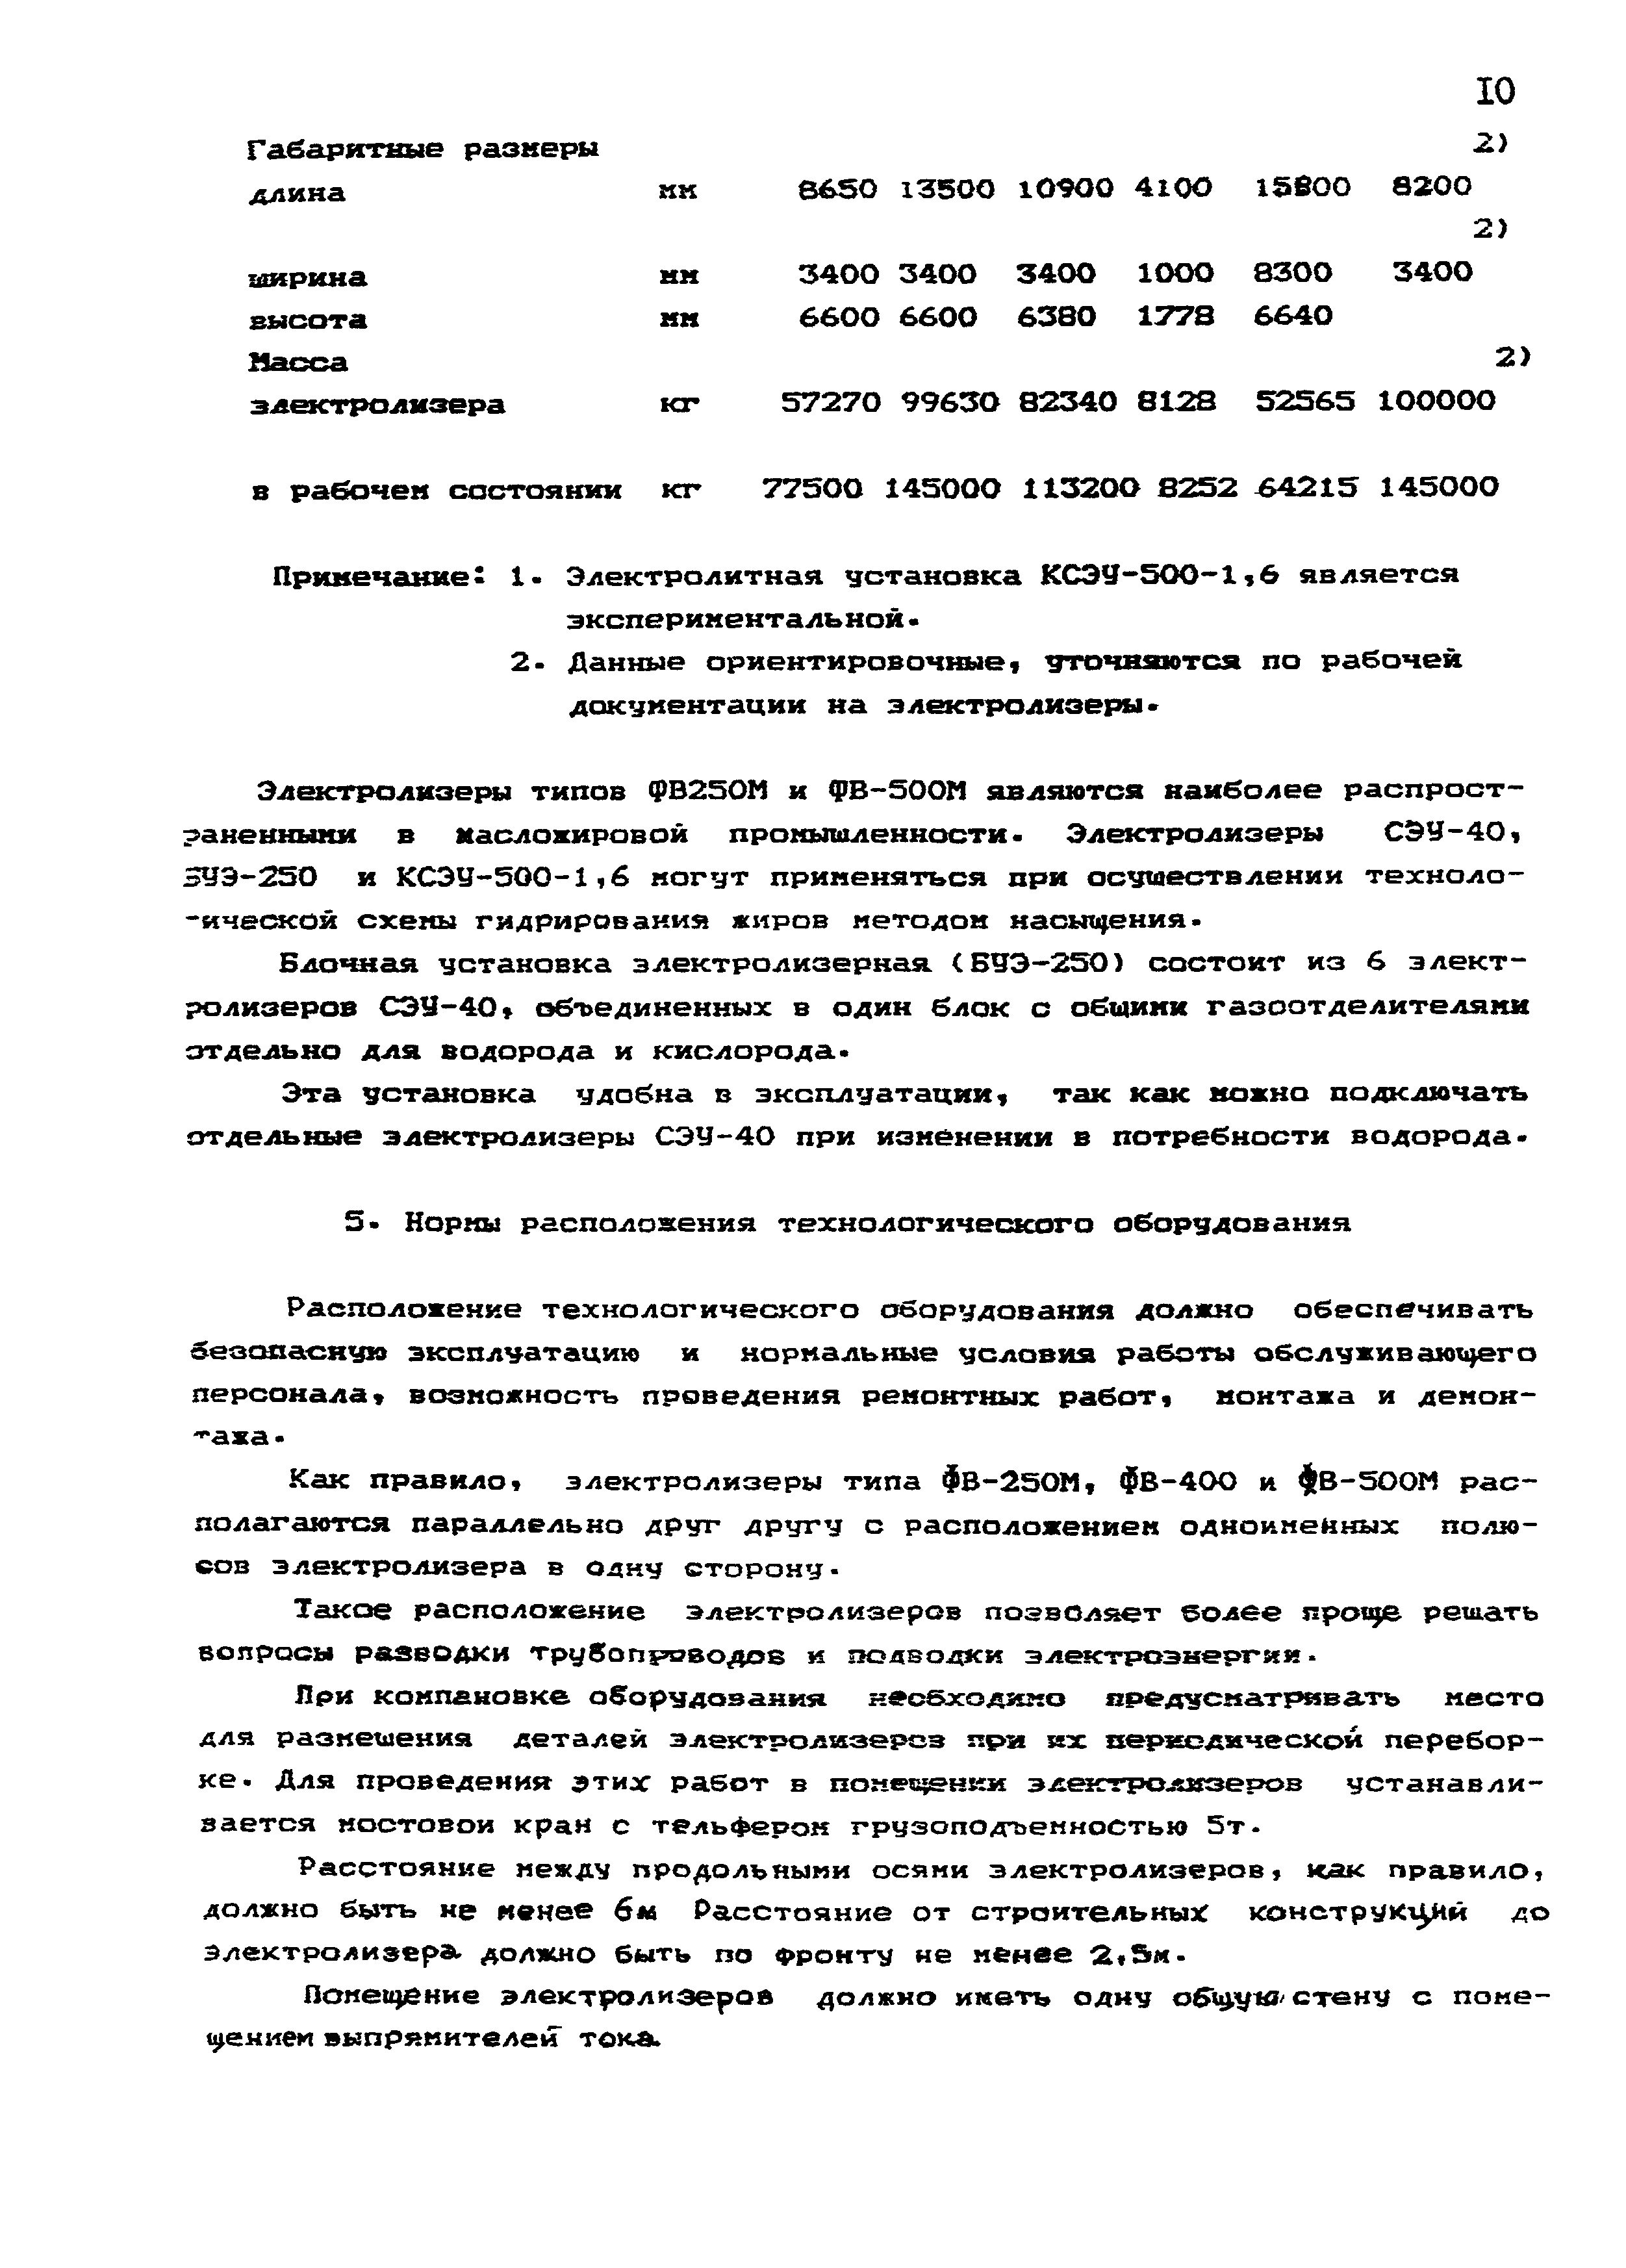 НТП 24-94